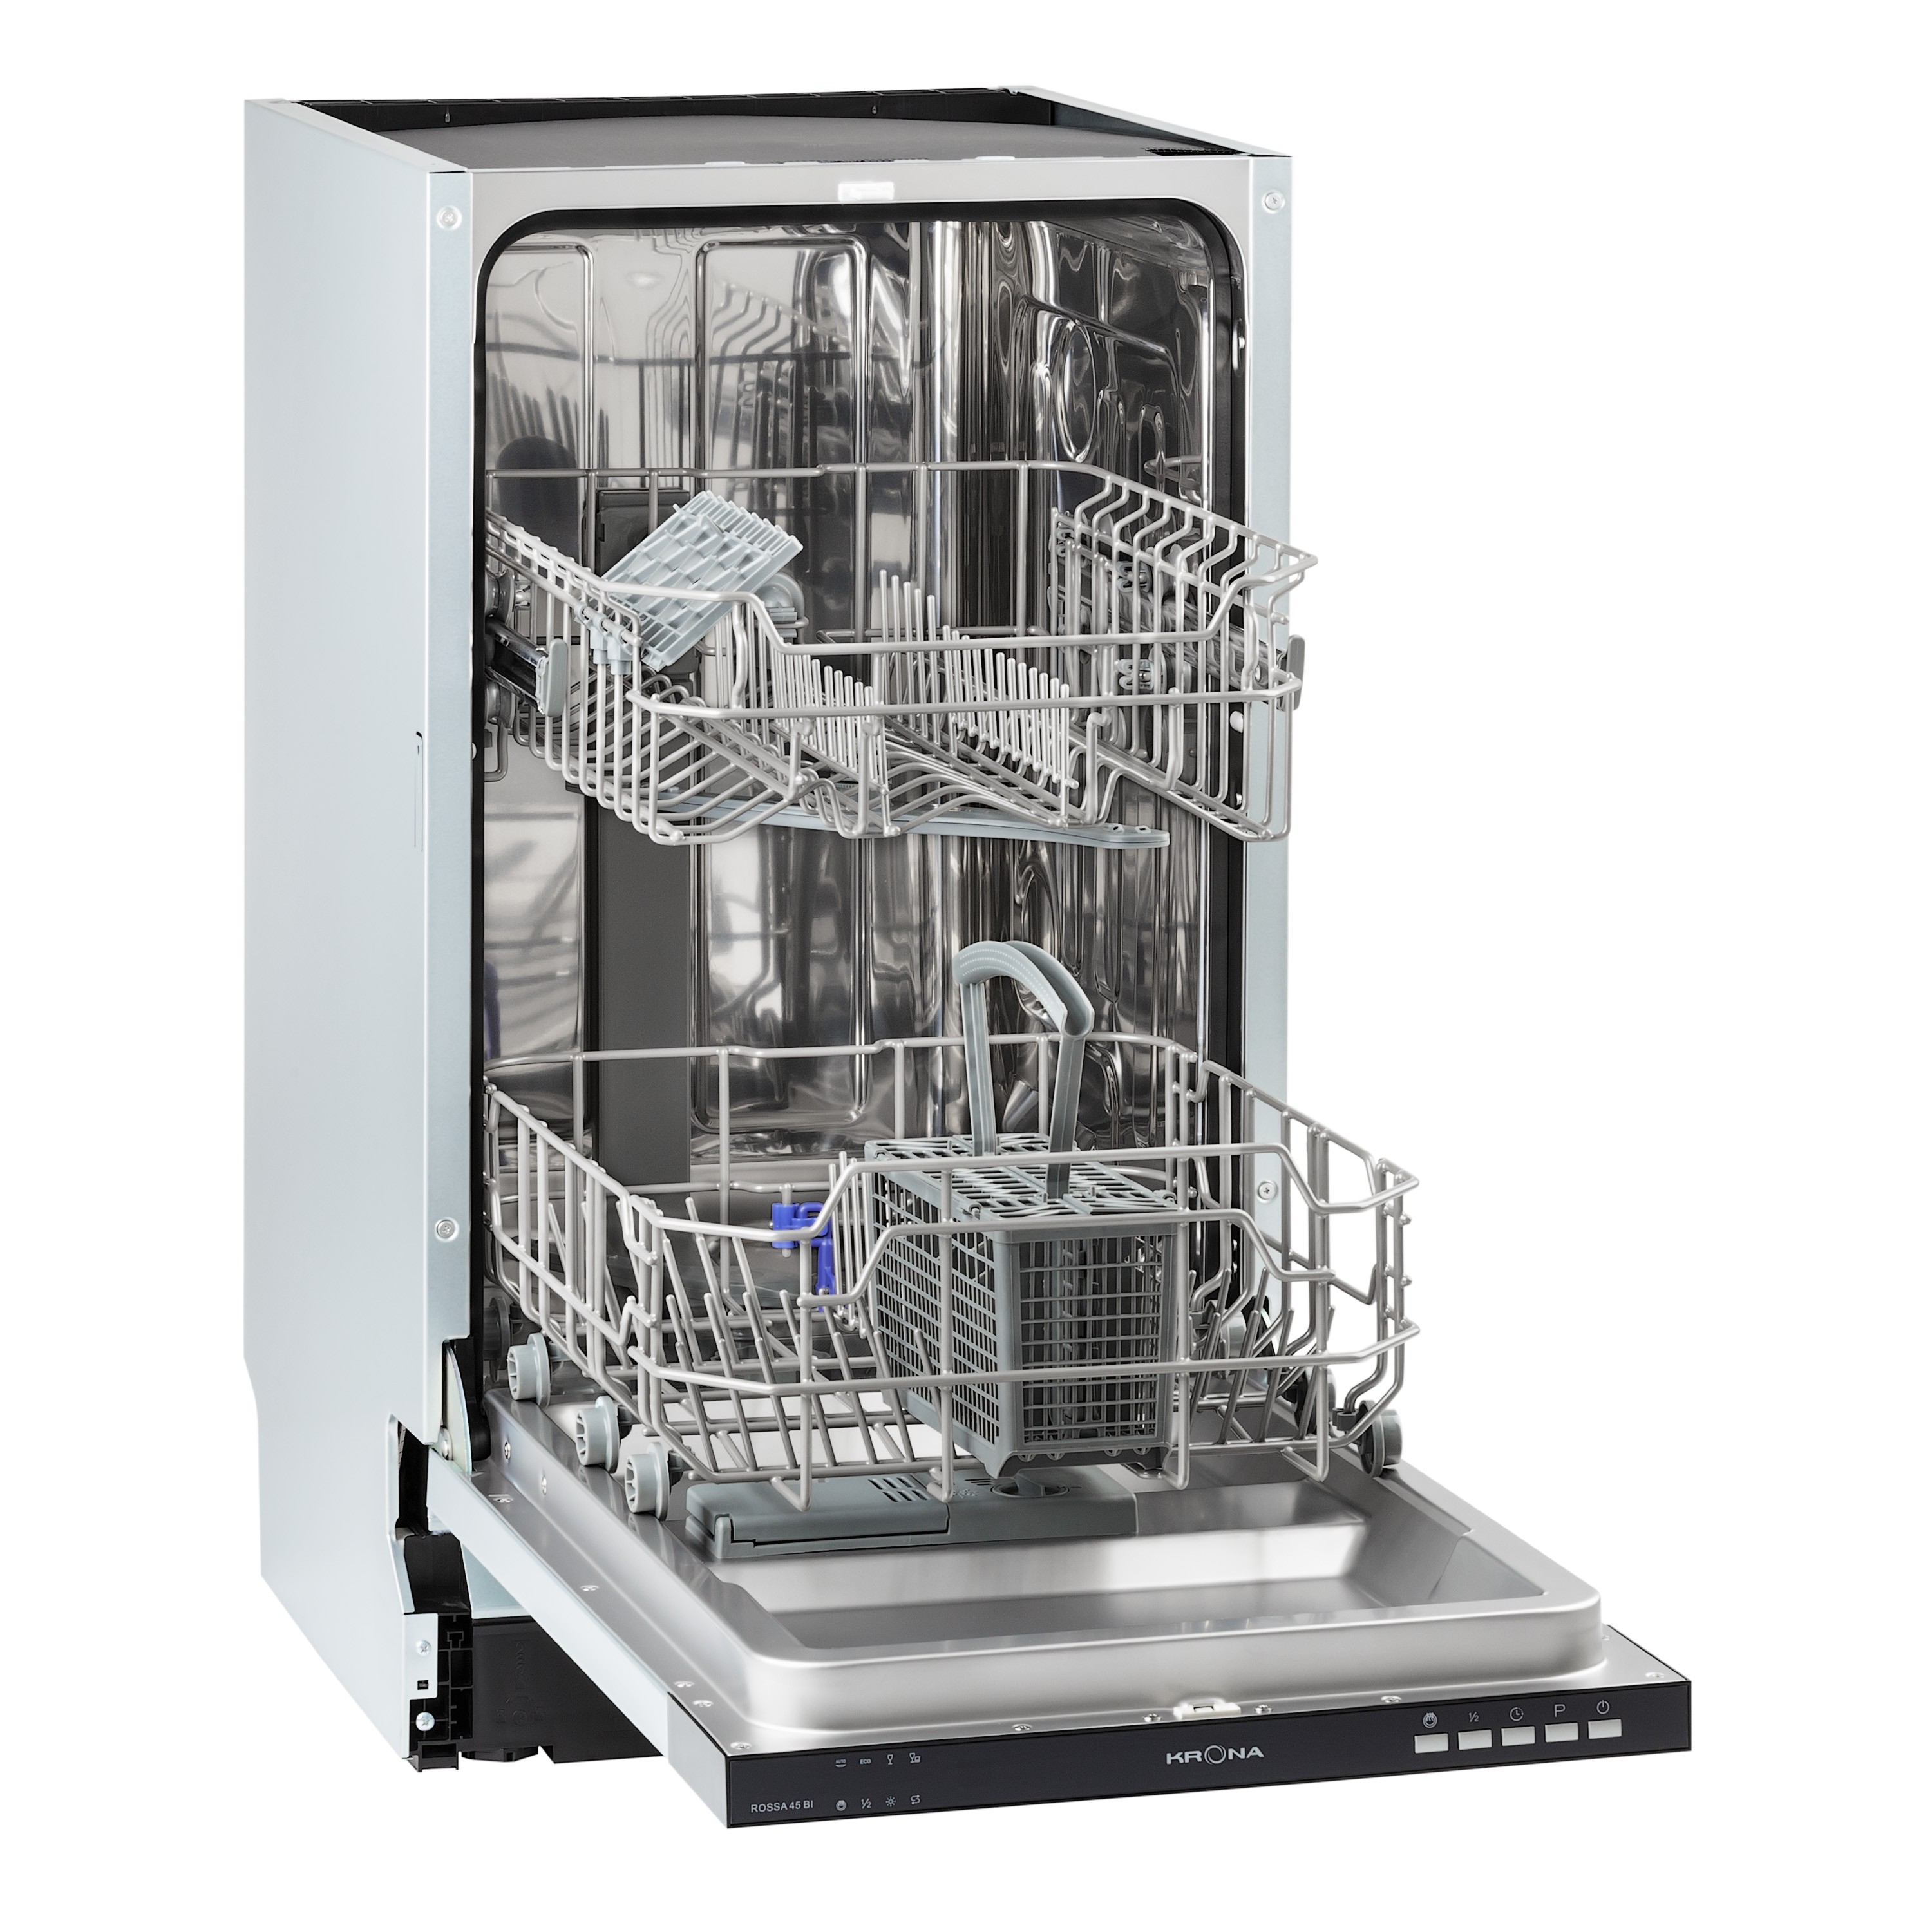 Встраиваемая посудомоечная машина KRONA ROSSA 45 BI⚡ — купить с доставкой по России в интернет-магазине Krona